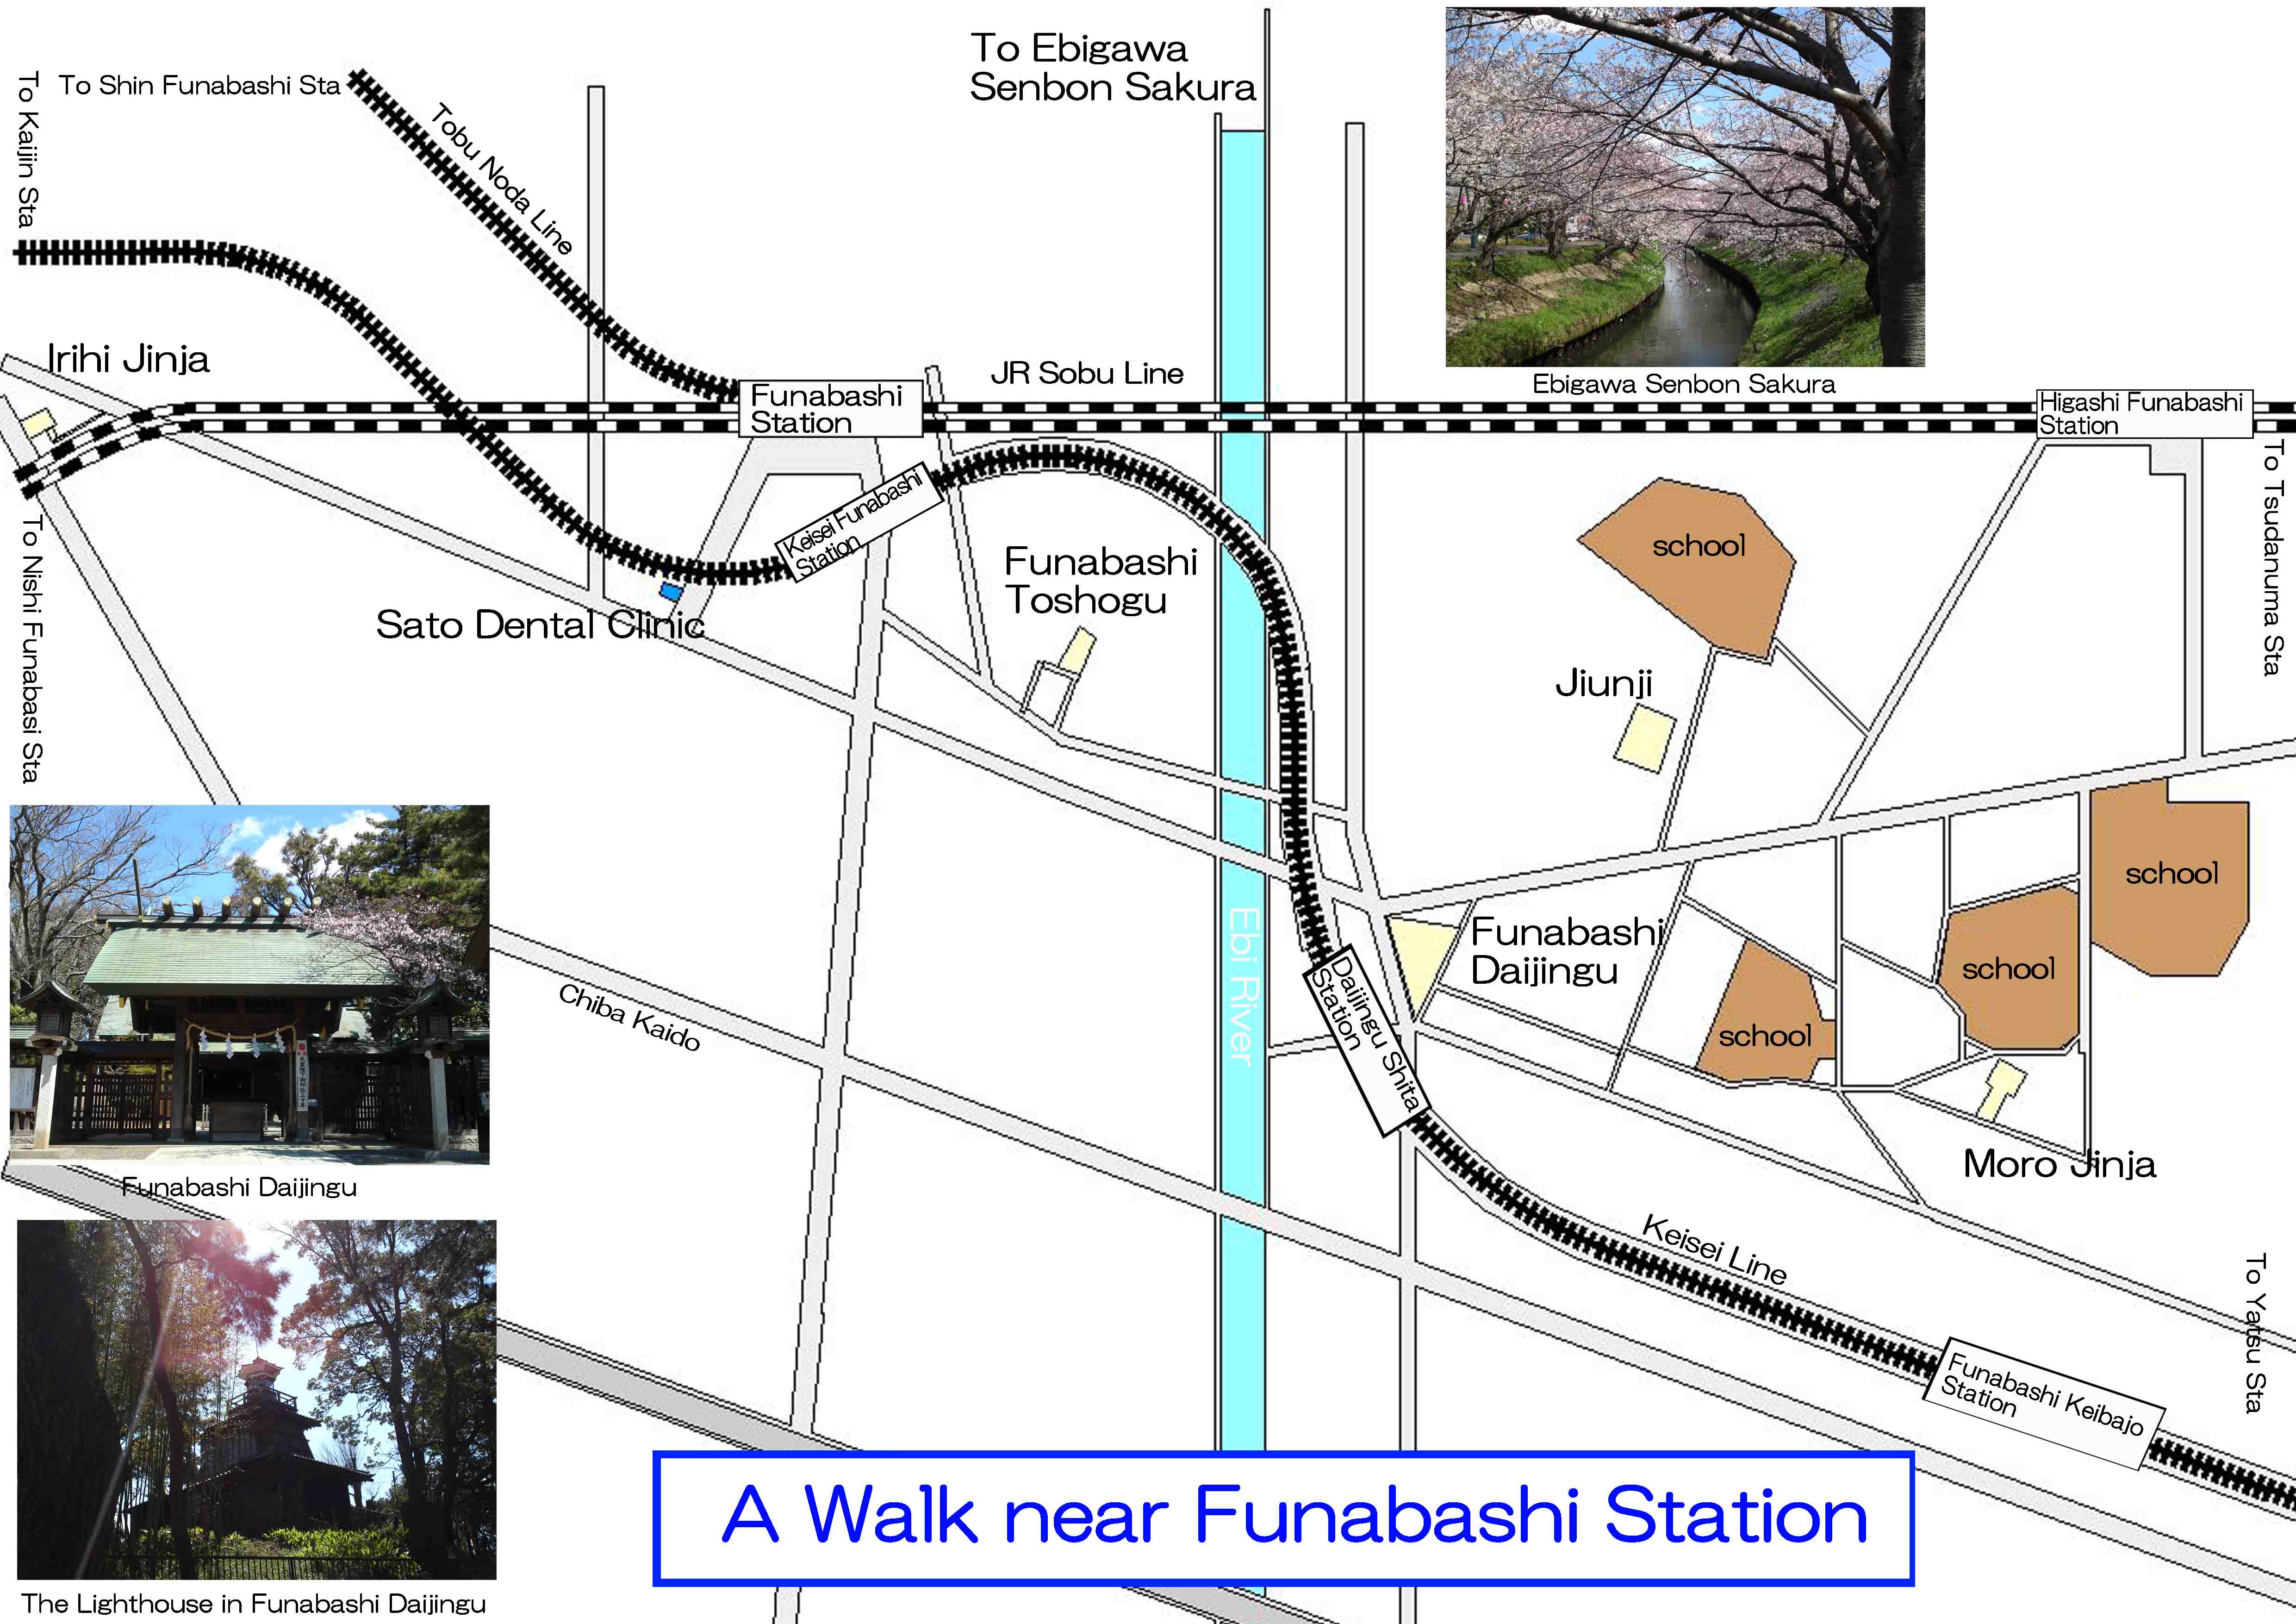 the landmarks near Funabashi Station